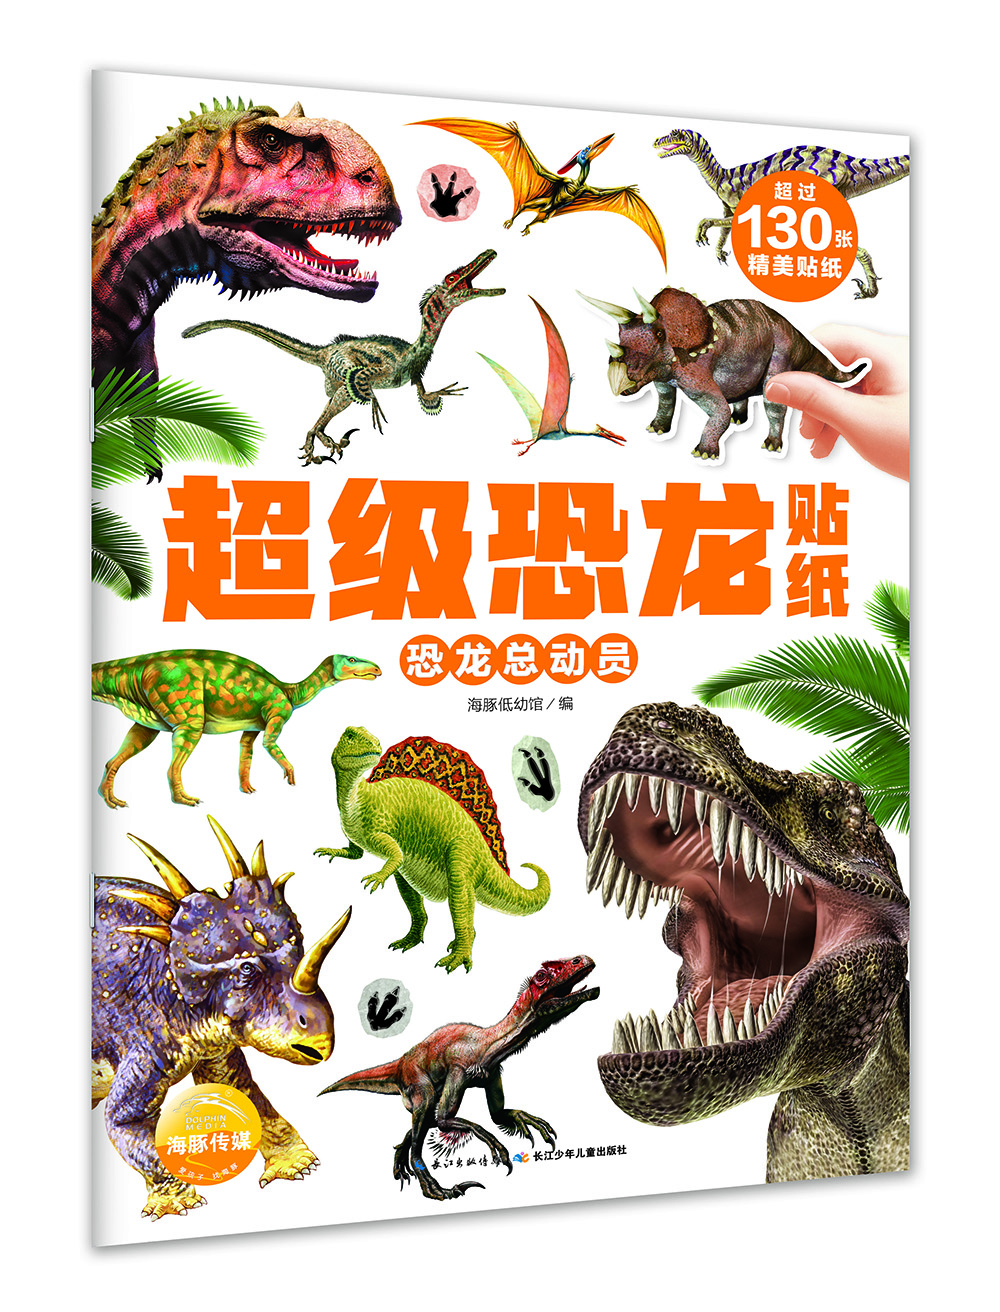 超级恐龙贴纸恐龙总动员 kindle格式下载